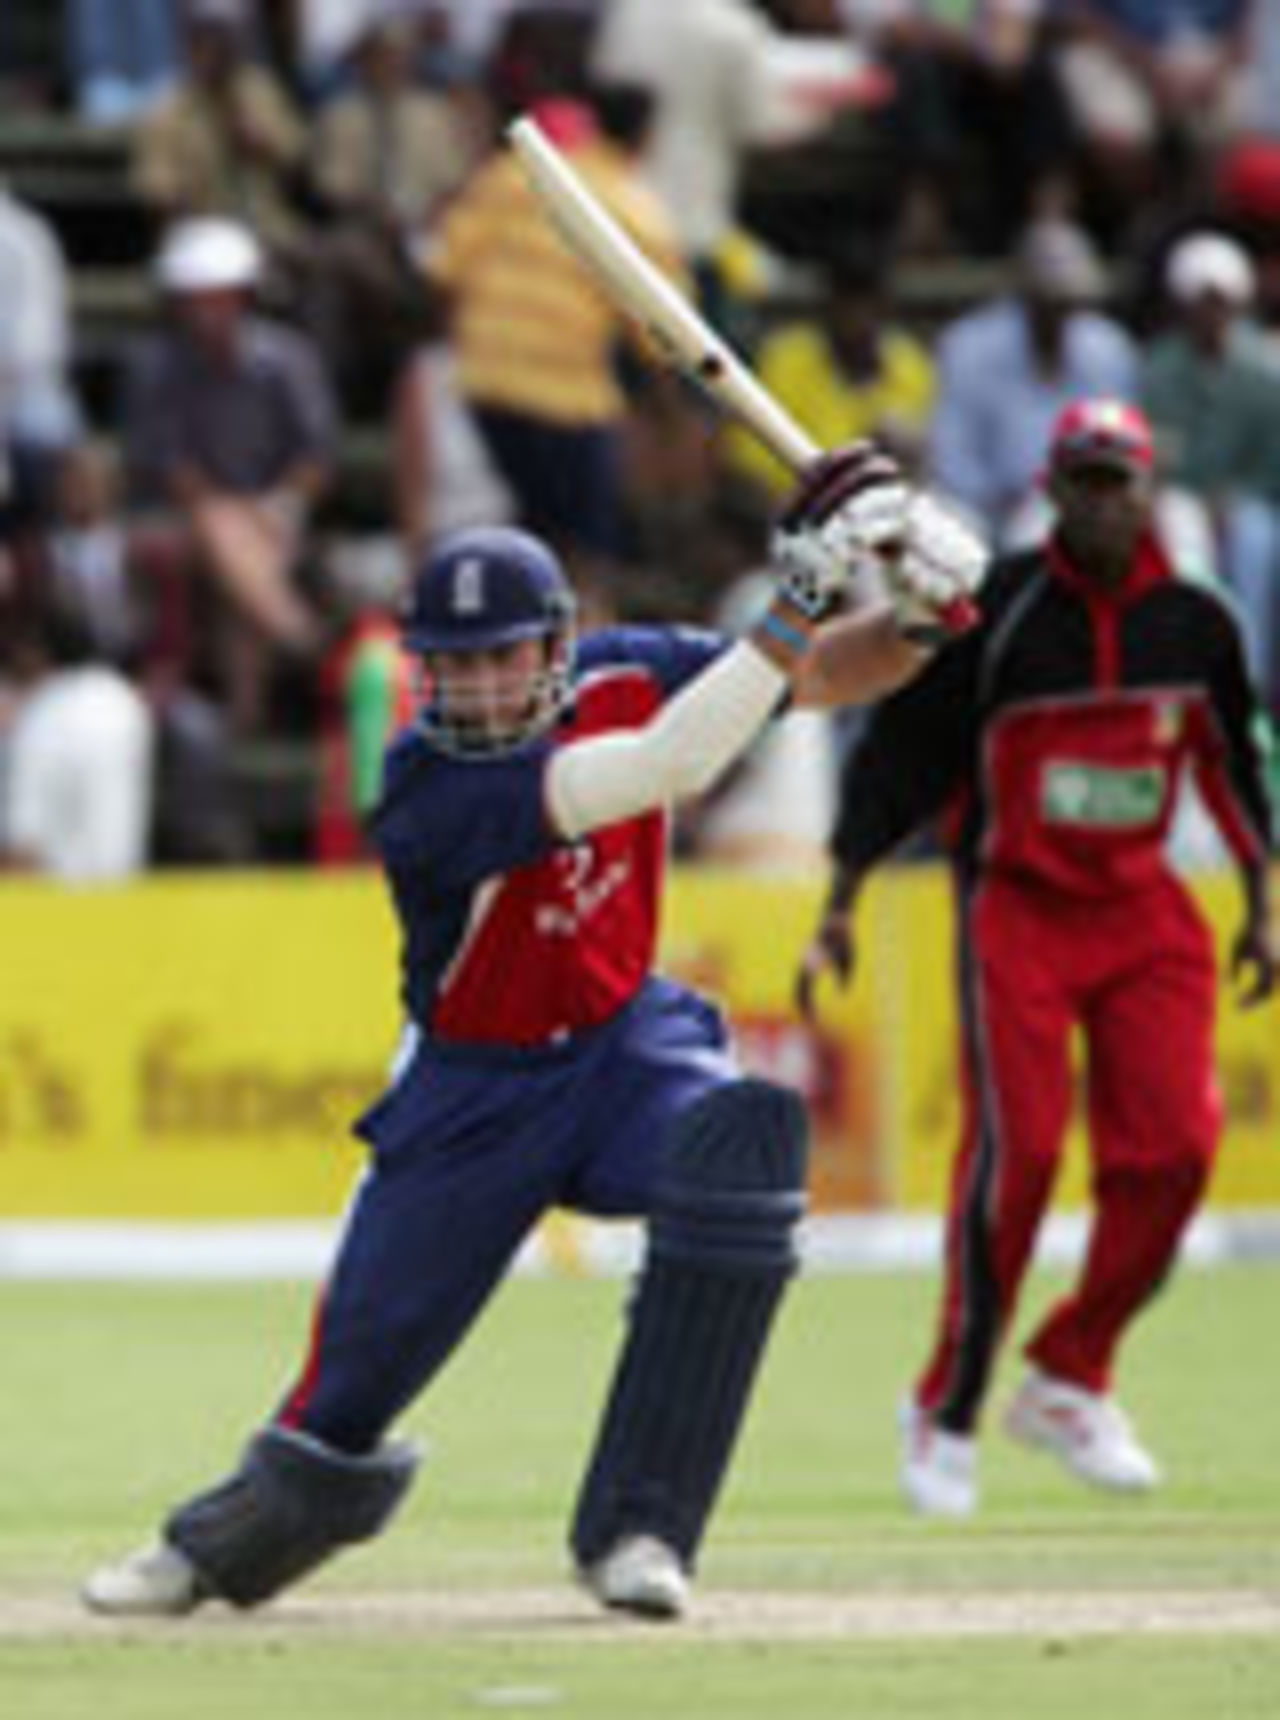 Michael Vaughan driving, first ODI, Zimbabwe v England, Harare, November 28 2004